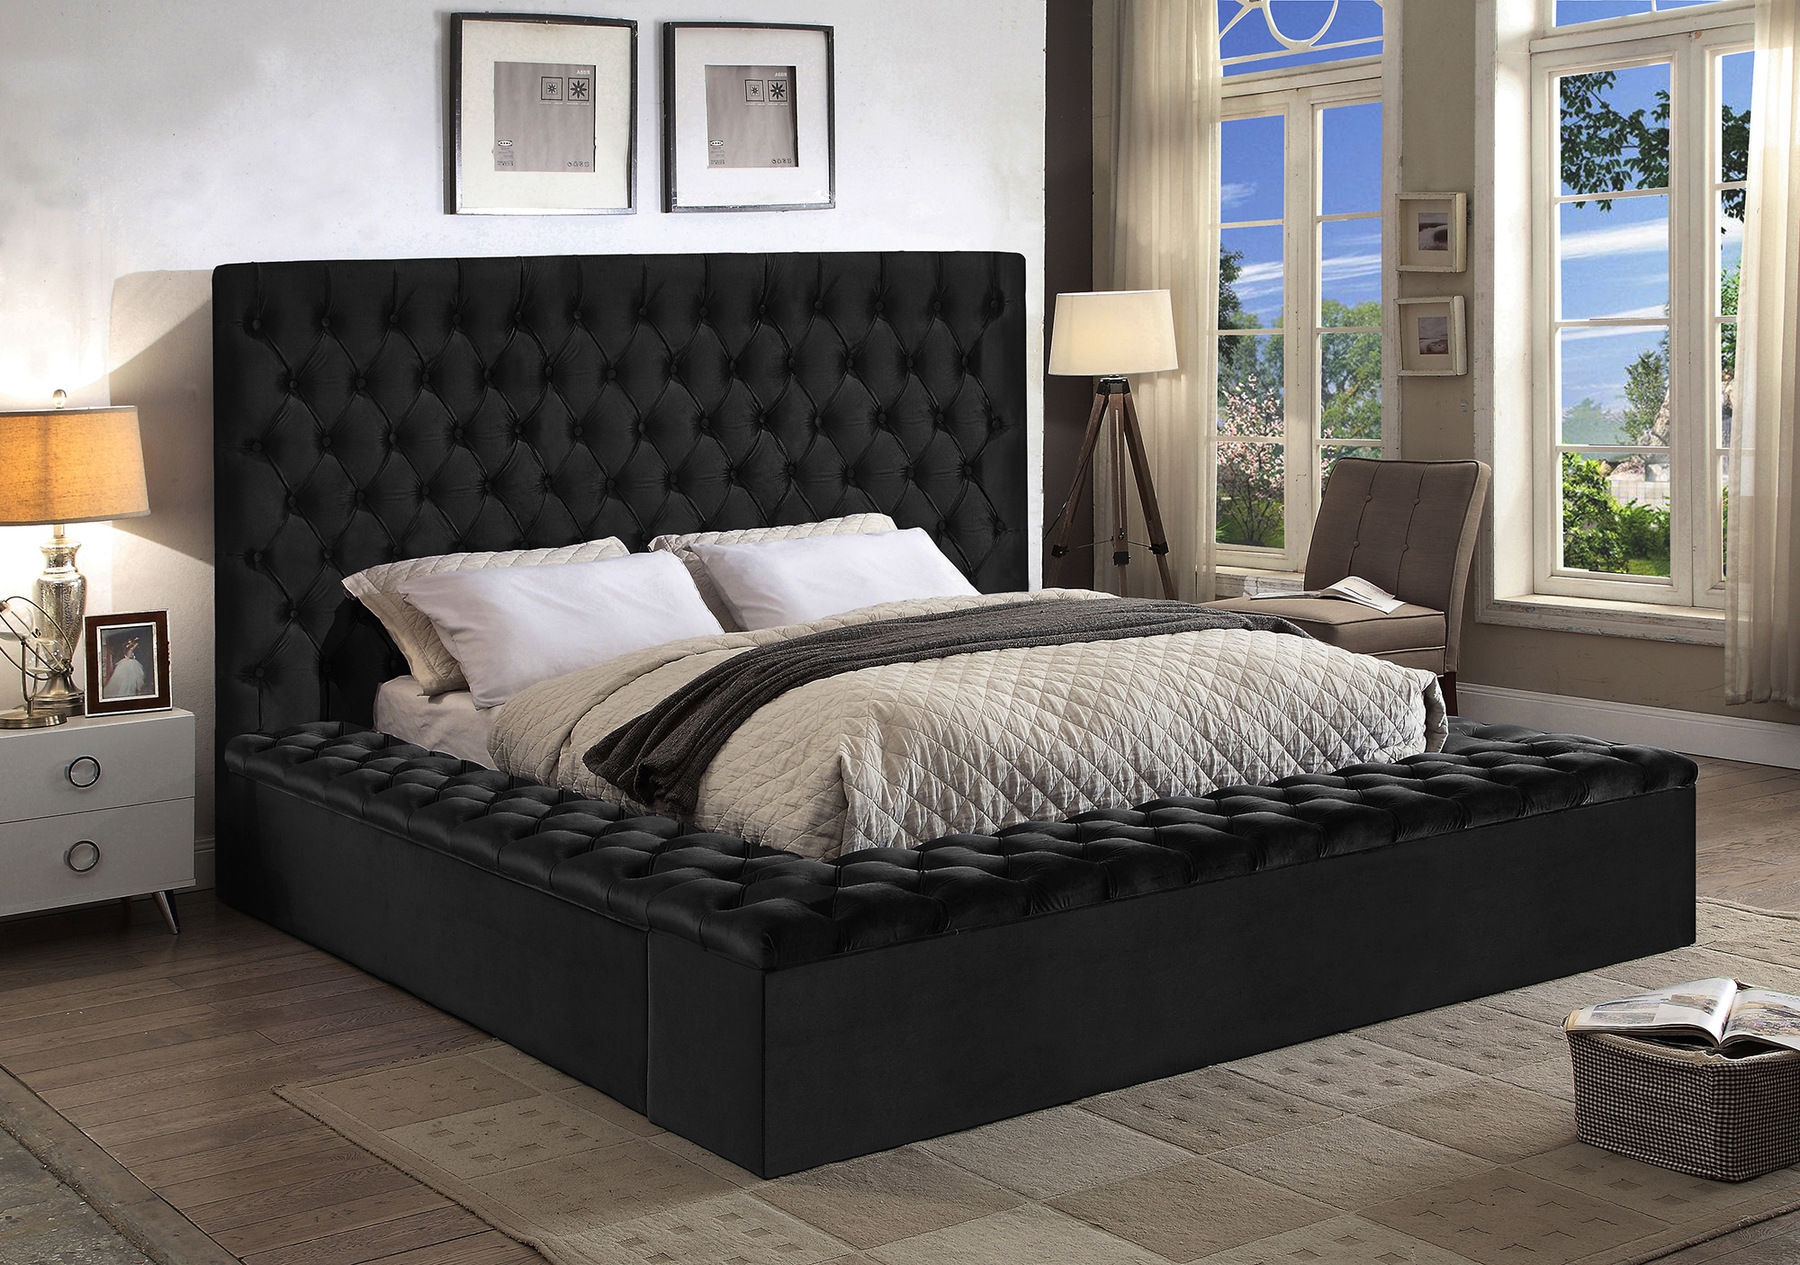 King Size Beds Comfyco Furniture, Black King Size Bed Frame